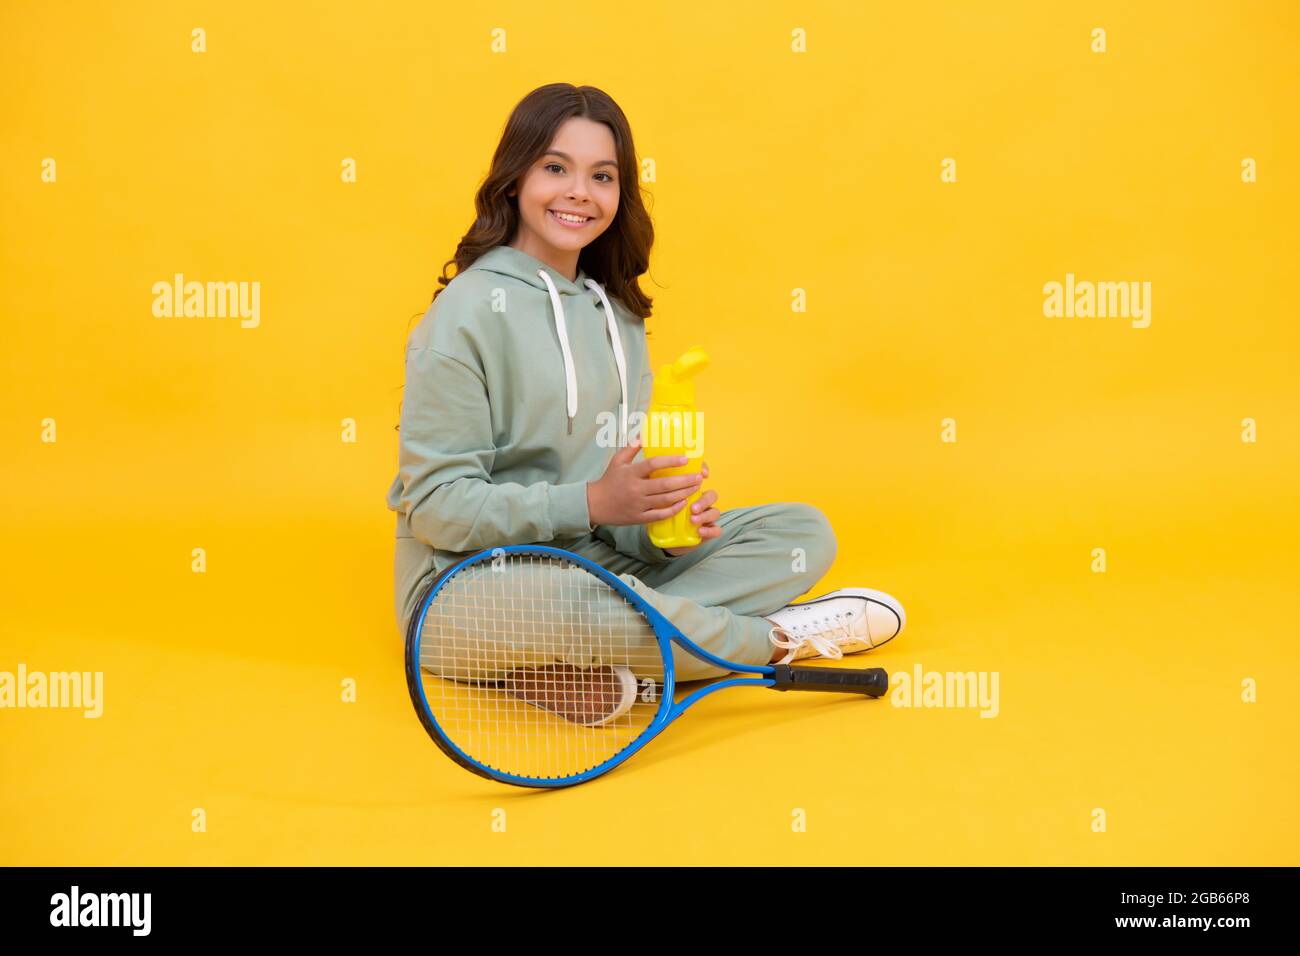 la ragazza si rilassa dopo l'allenamento sportivo. è dedicata al fitness. tennista o badminton. Foto Stock